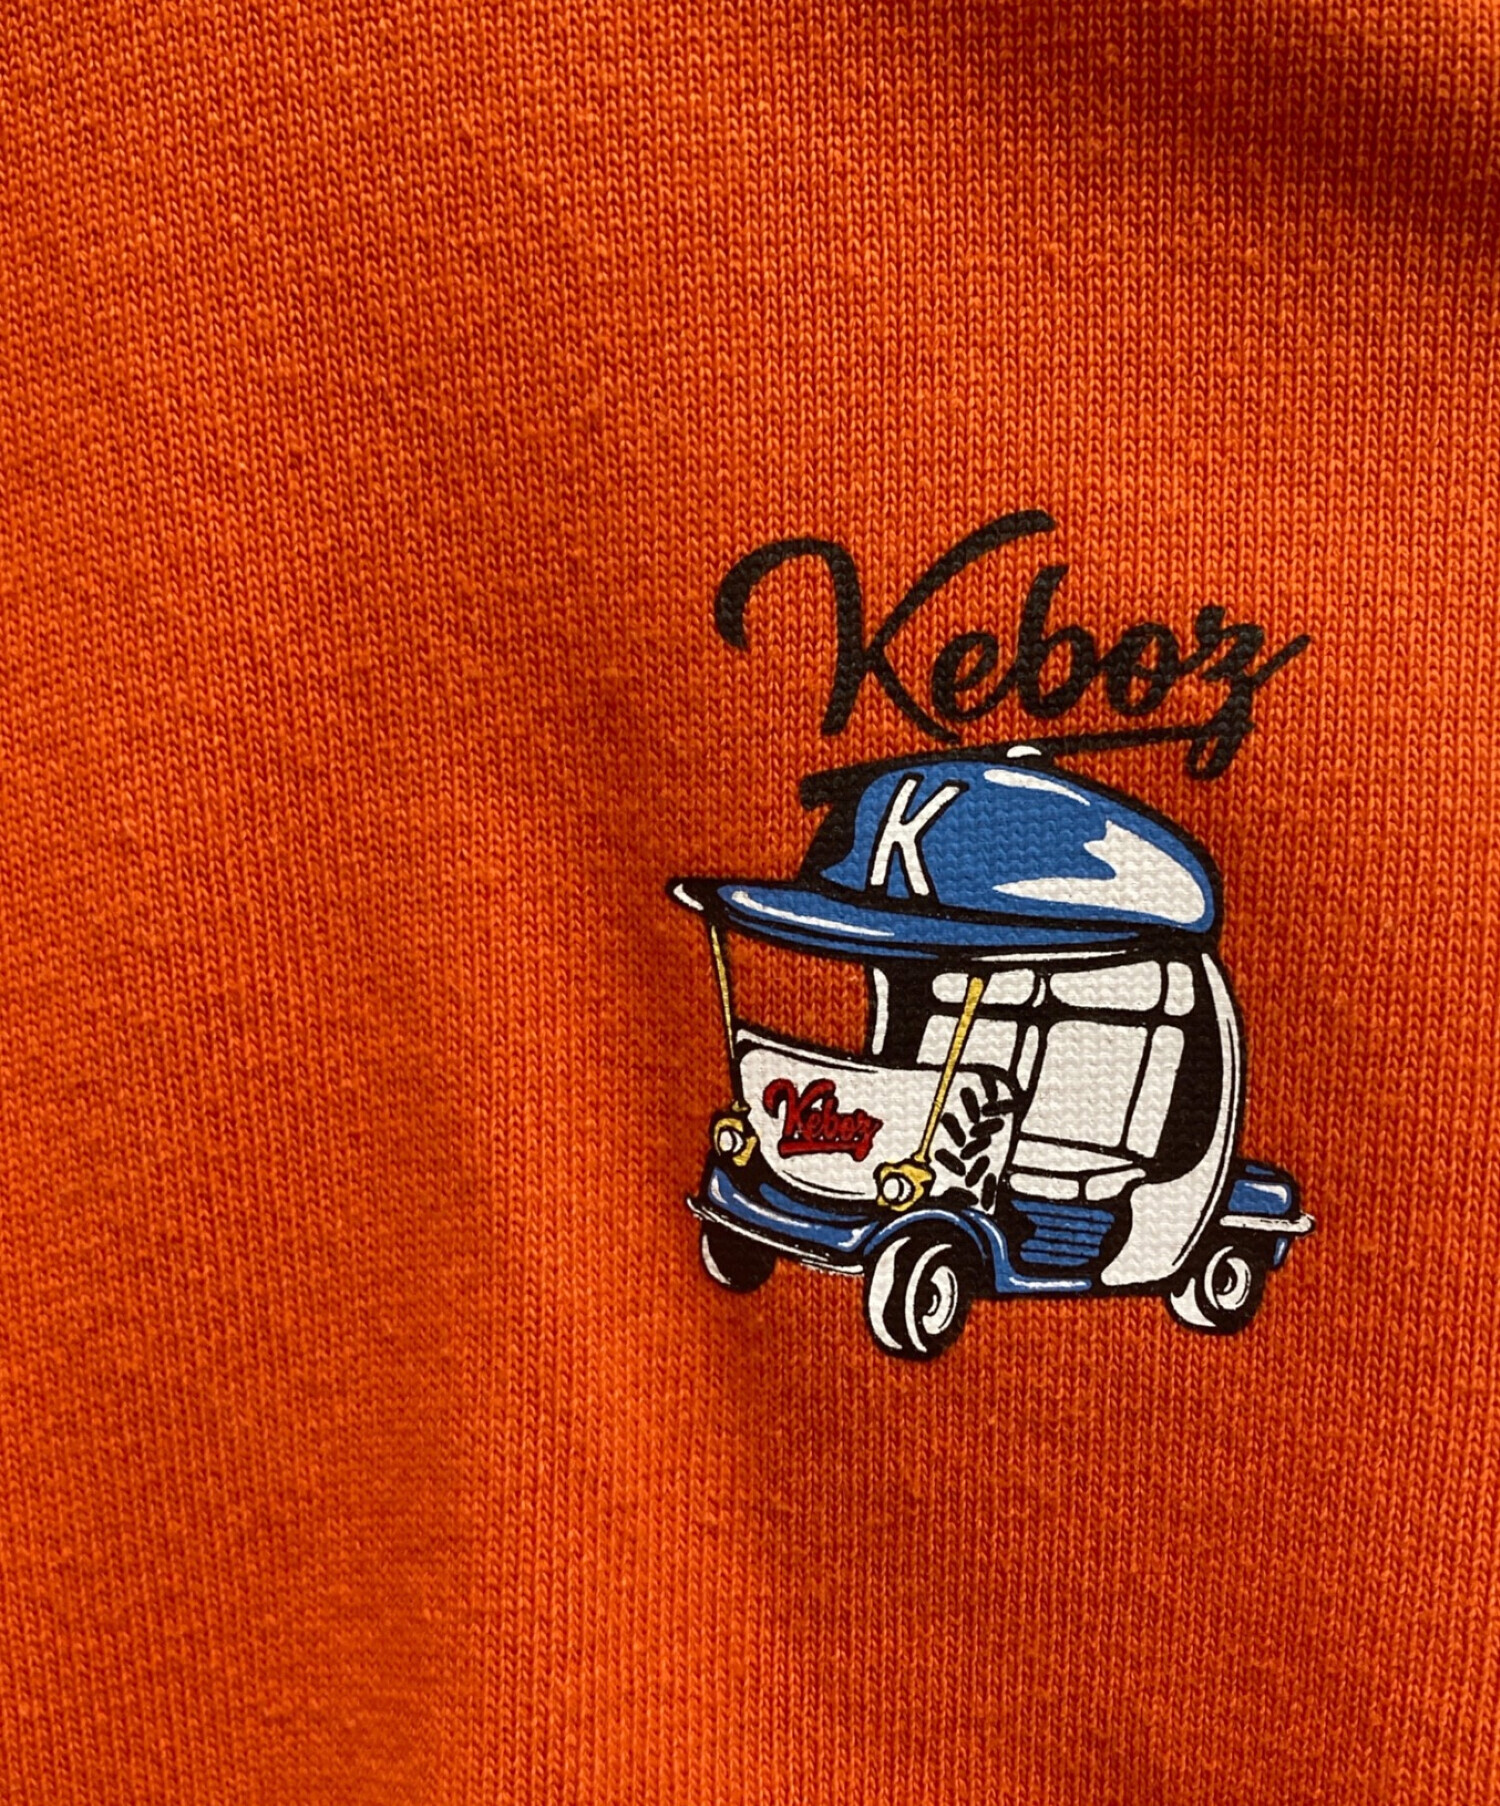 KEBOZ (ケボズ) クルーネックスウェット オレンジ サイズ:M